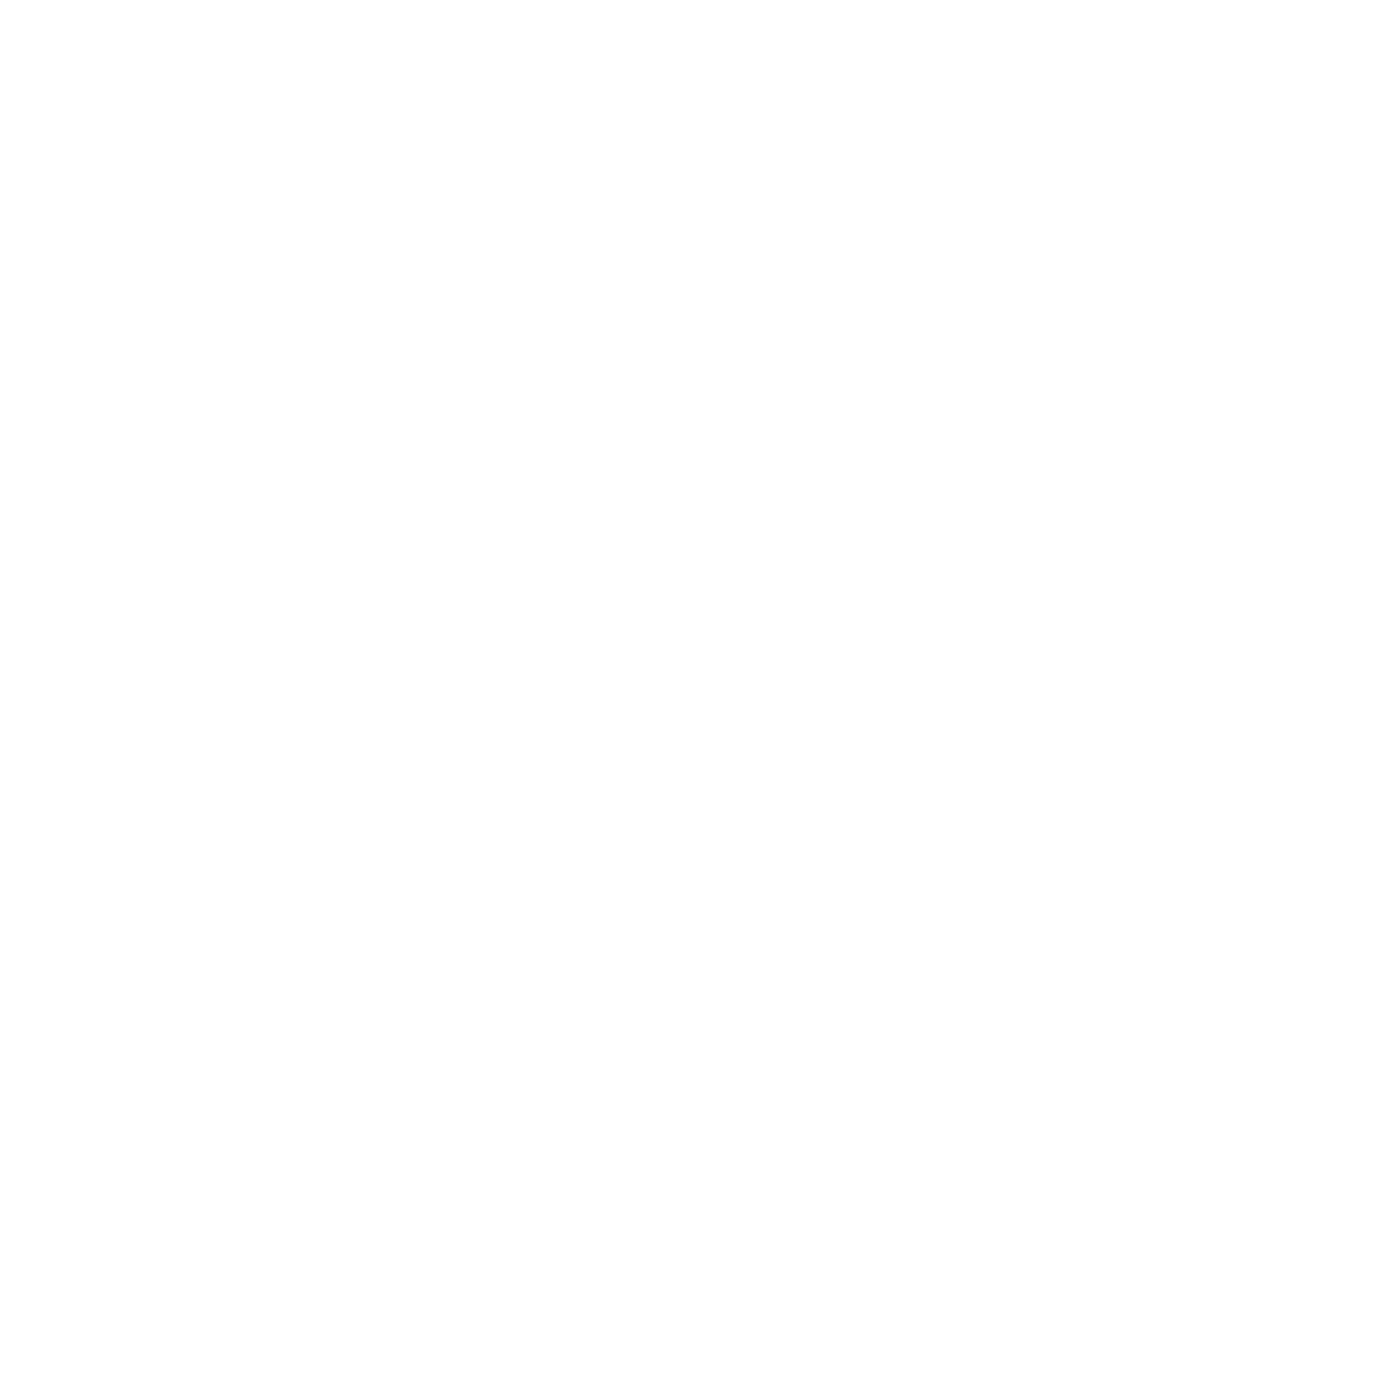 Картина «Вид на Ай-Петри из Воронцовского парка вечером», автор Олег Калитеня, написана художником в жанре «Пейзаж». Купить картину Олега Калитени можно на сайте галереи современного искусства DA's Art Depot